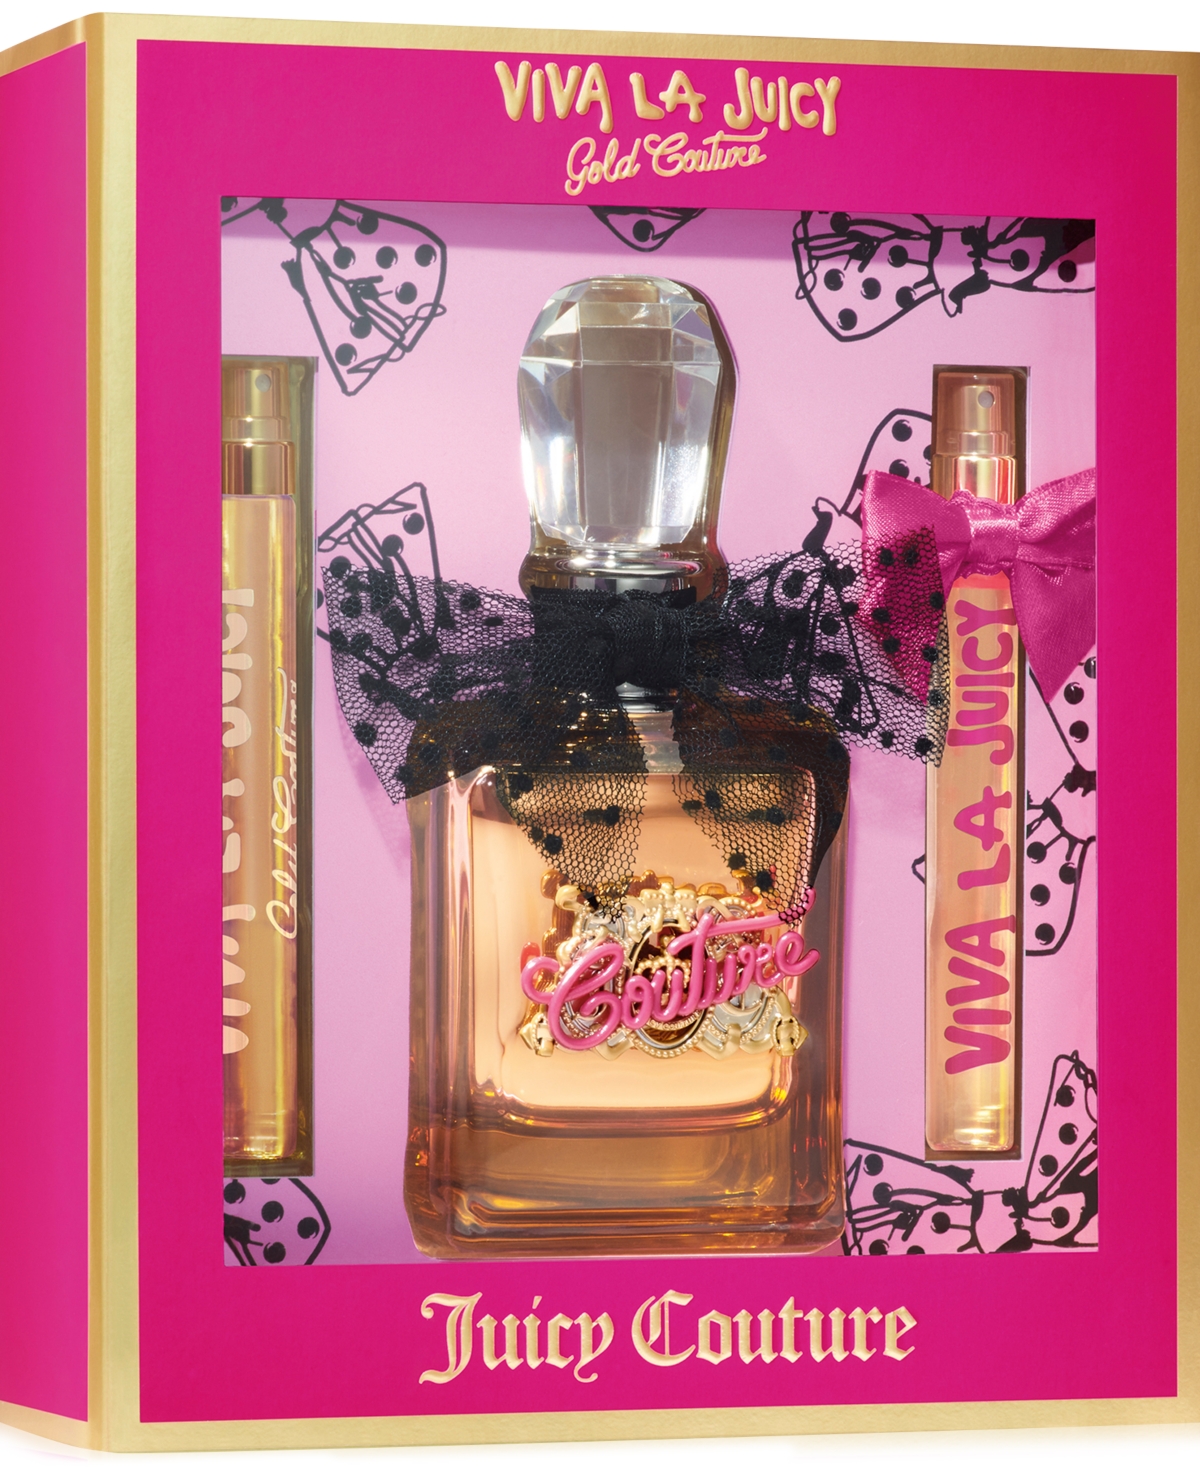 3-Pc. Viva La Juicy Gold Couture Eau de Parfum Gift Set